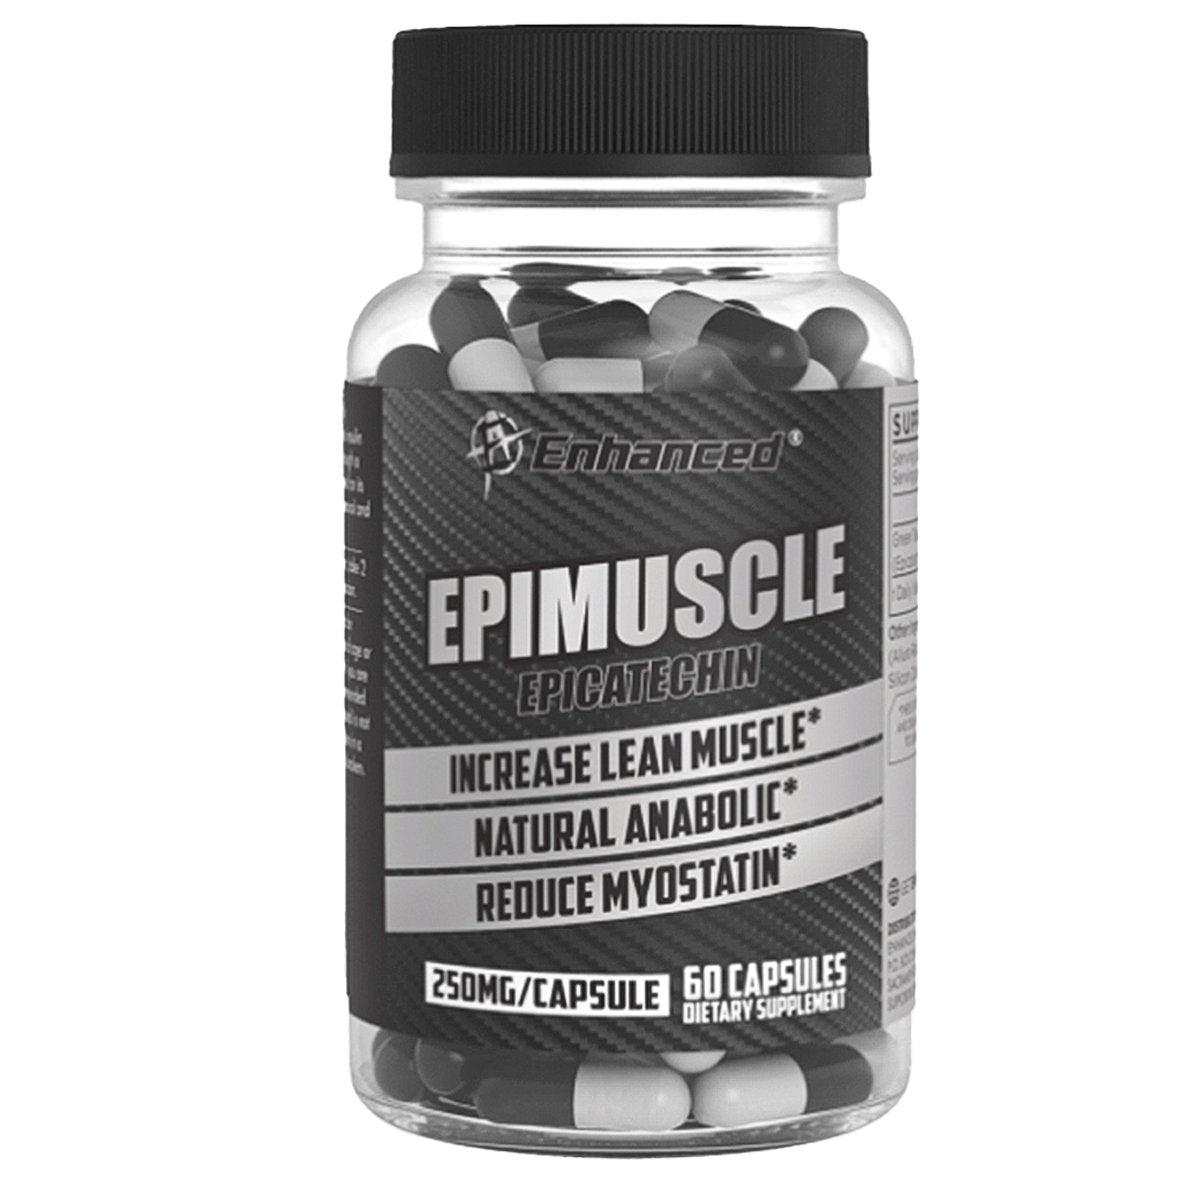 EPIMUSCLE - JH Nutrición